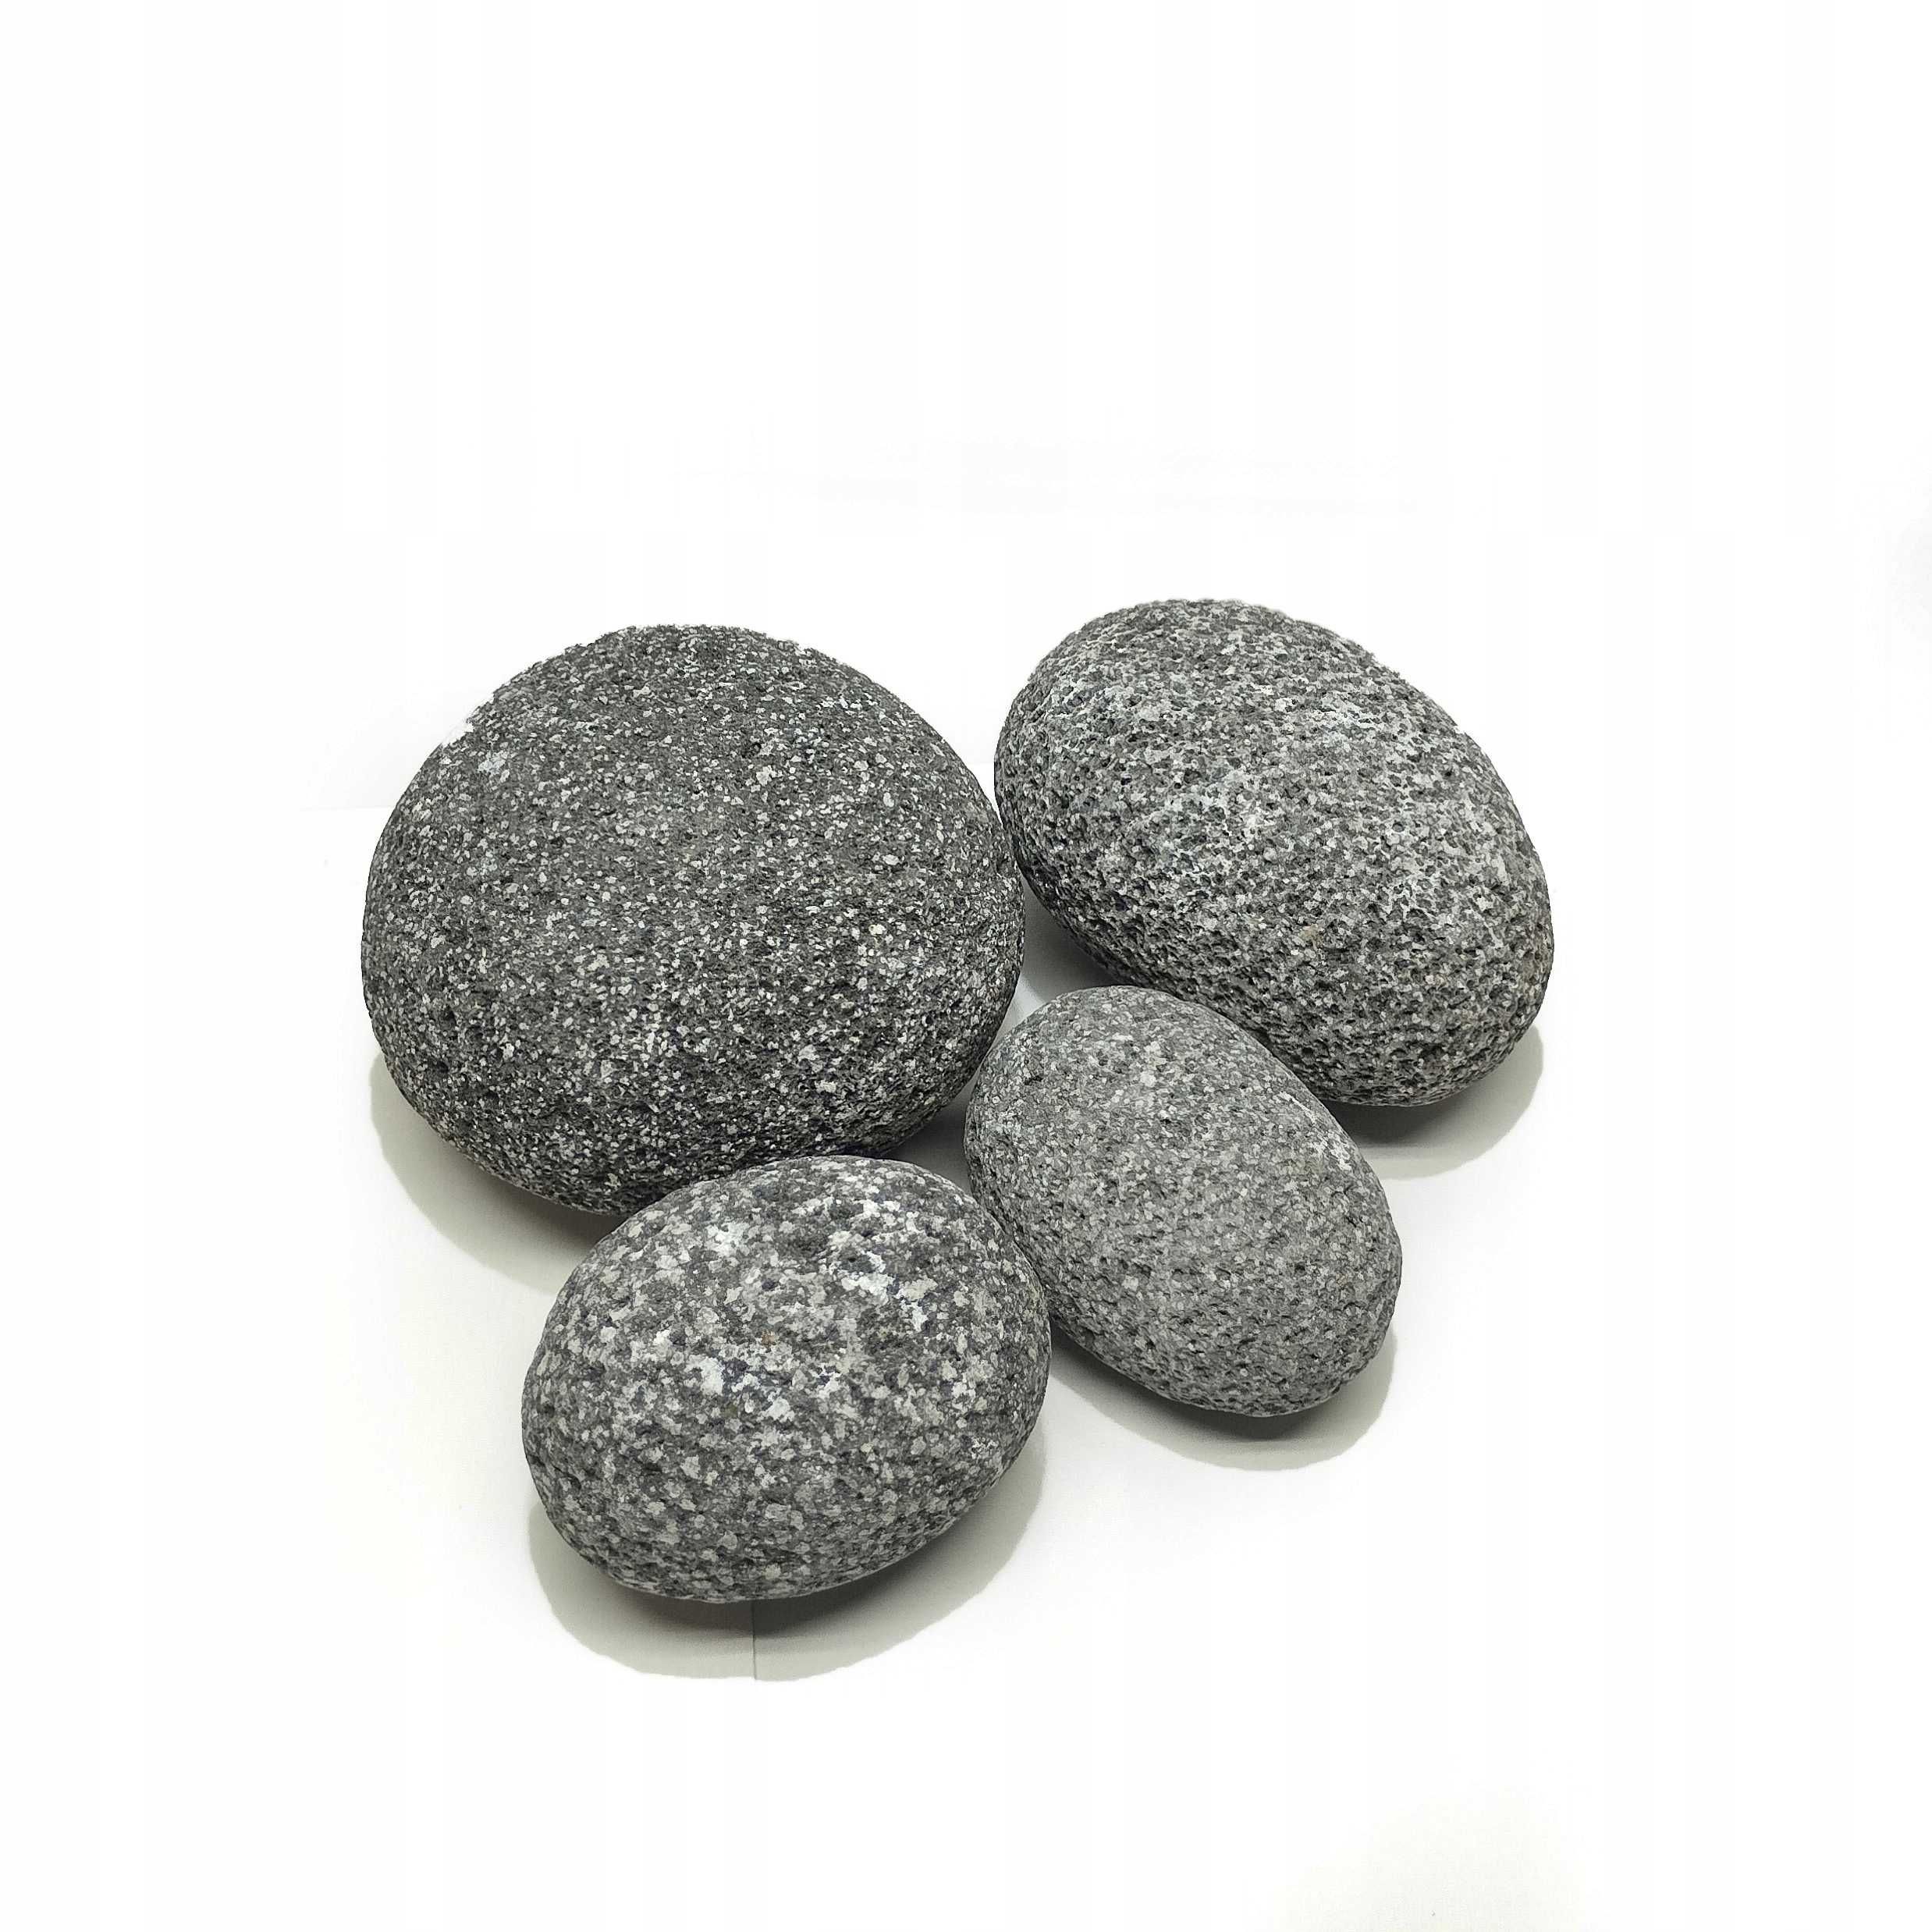 Progrow Pebble Stone - Selekcjonowany Zestaw Skał Akwariowych WYSYŁKA